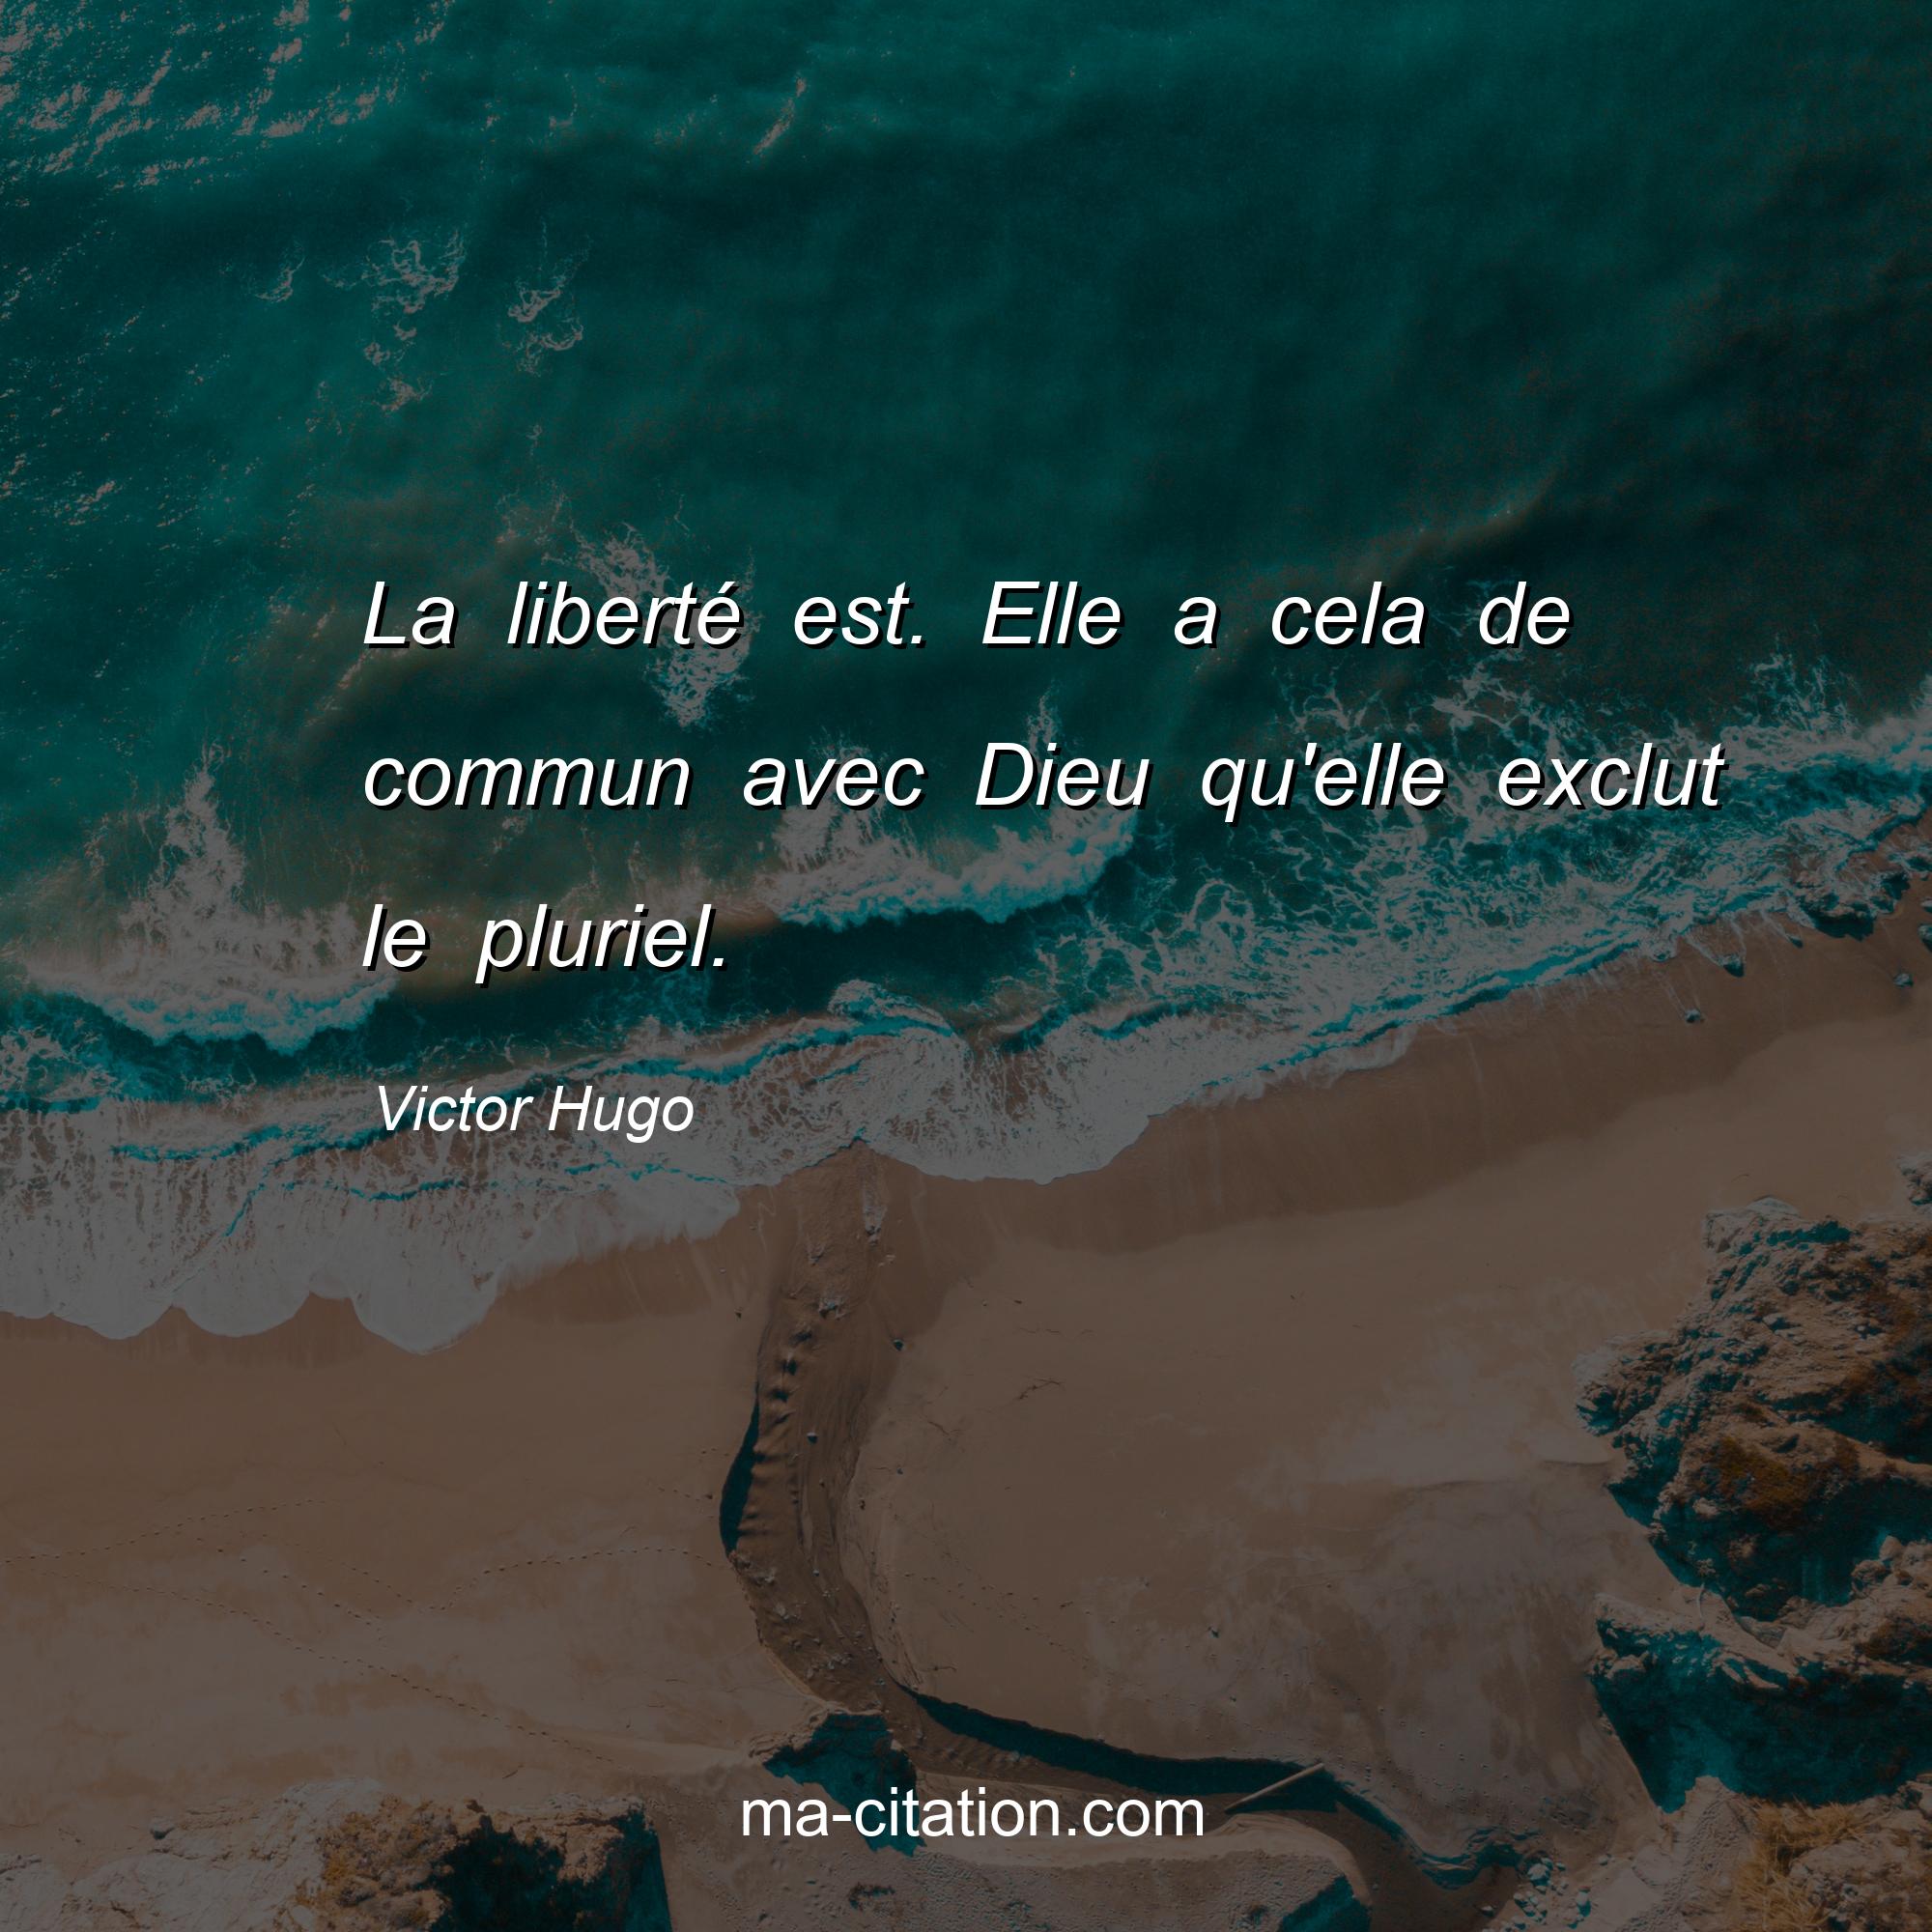 Victor Hugo : La liberté est. Elle a cela de commun avec Dieu qu'elle exclut le pluriel.